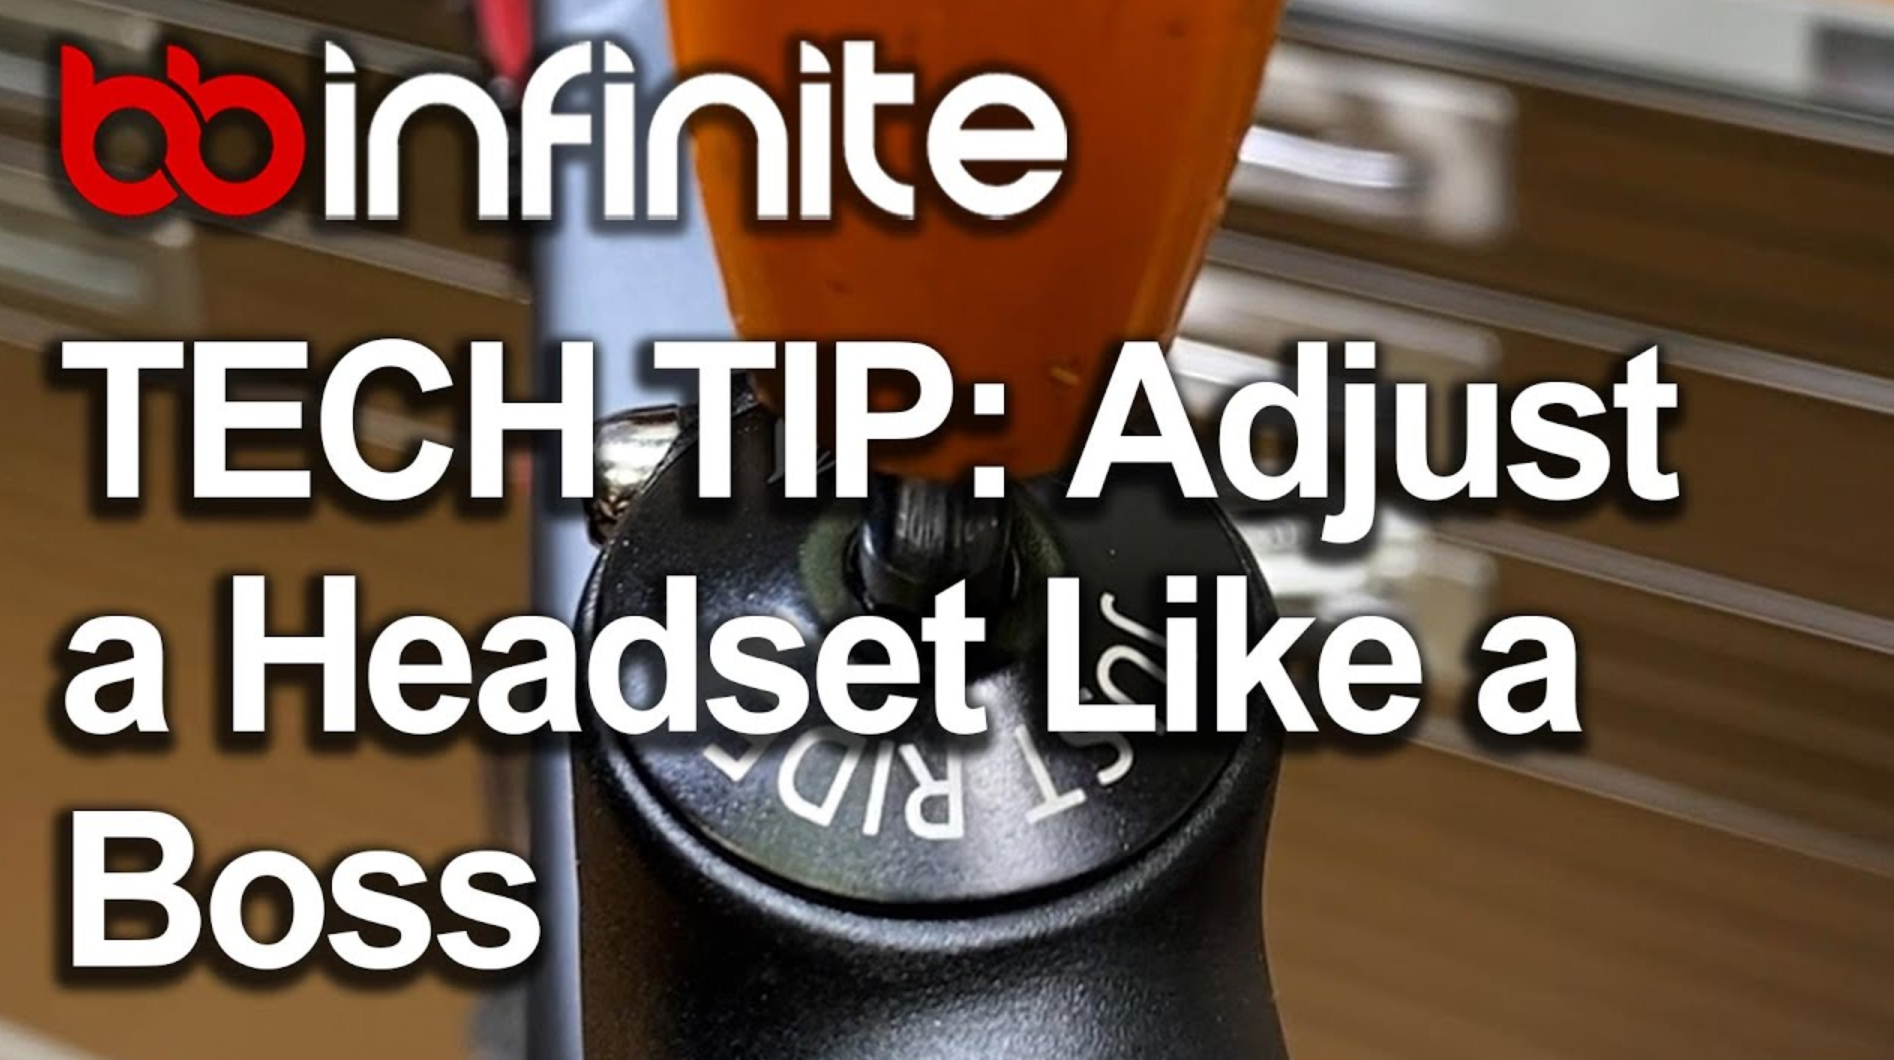 BBInfinite TECH TIP: Adjust a Headset Like a Boss